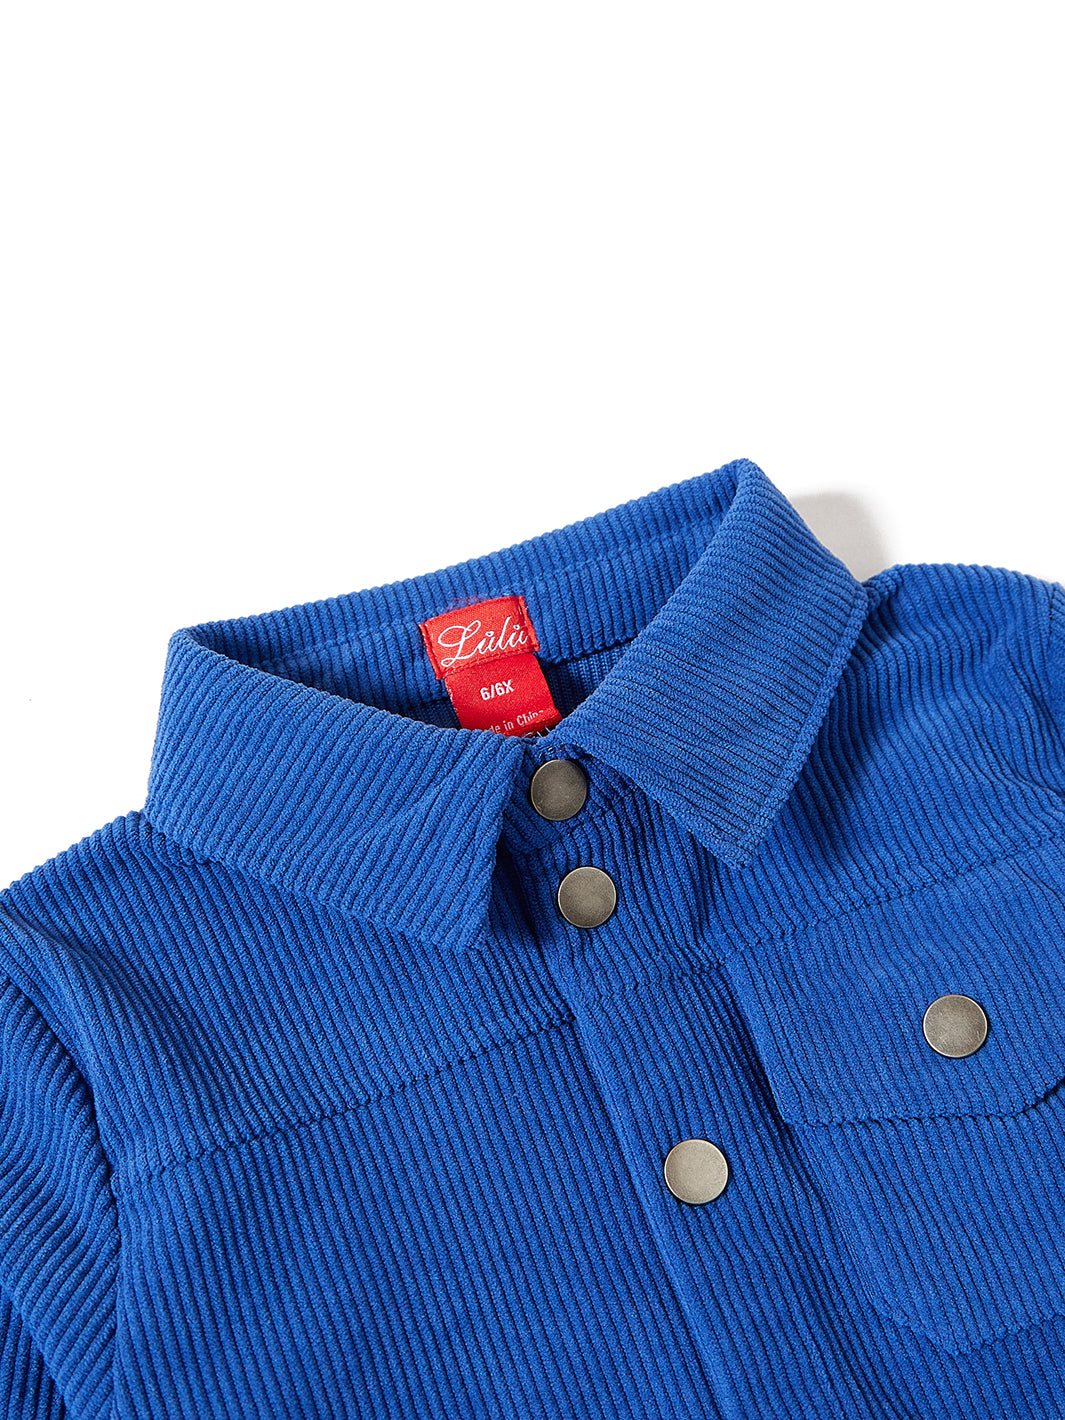 Pockets Shirts - Royal Blue